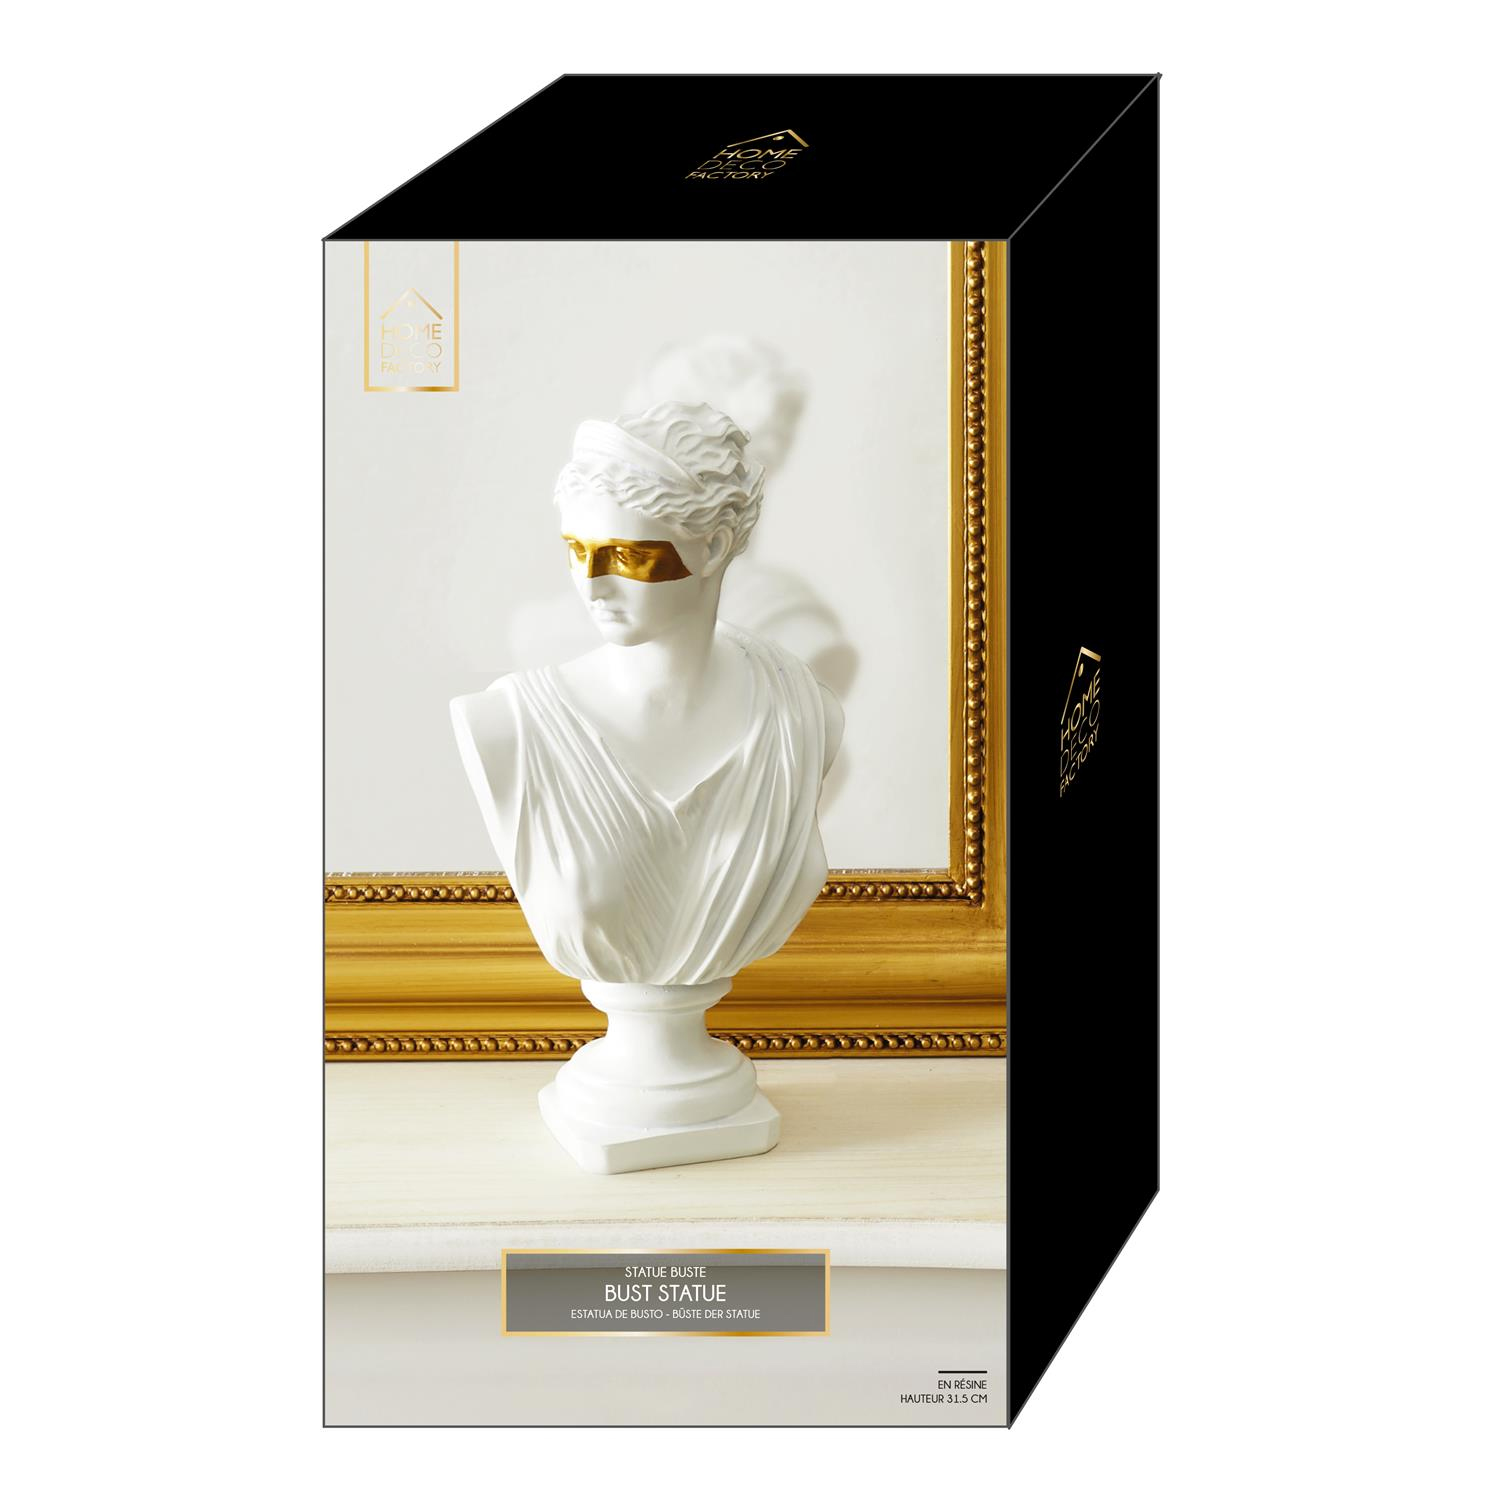 Statut buste decoratif resine deco blanc or figure original masque dore royal femme homme grec art monde sculpture grecque figurine decoration mannequin socle contemporain 3